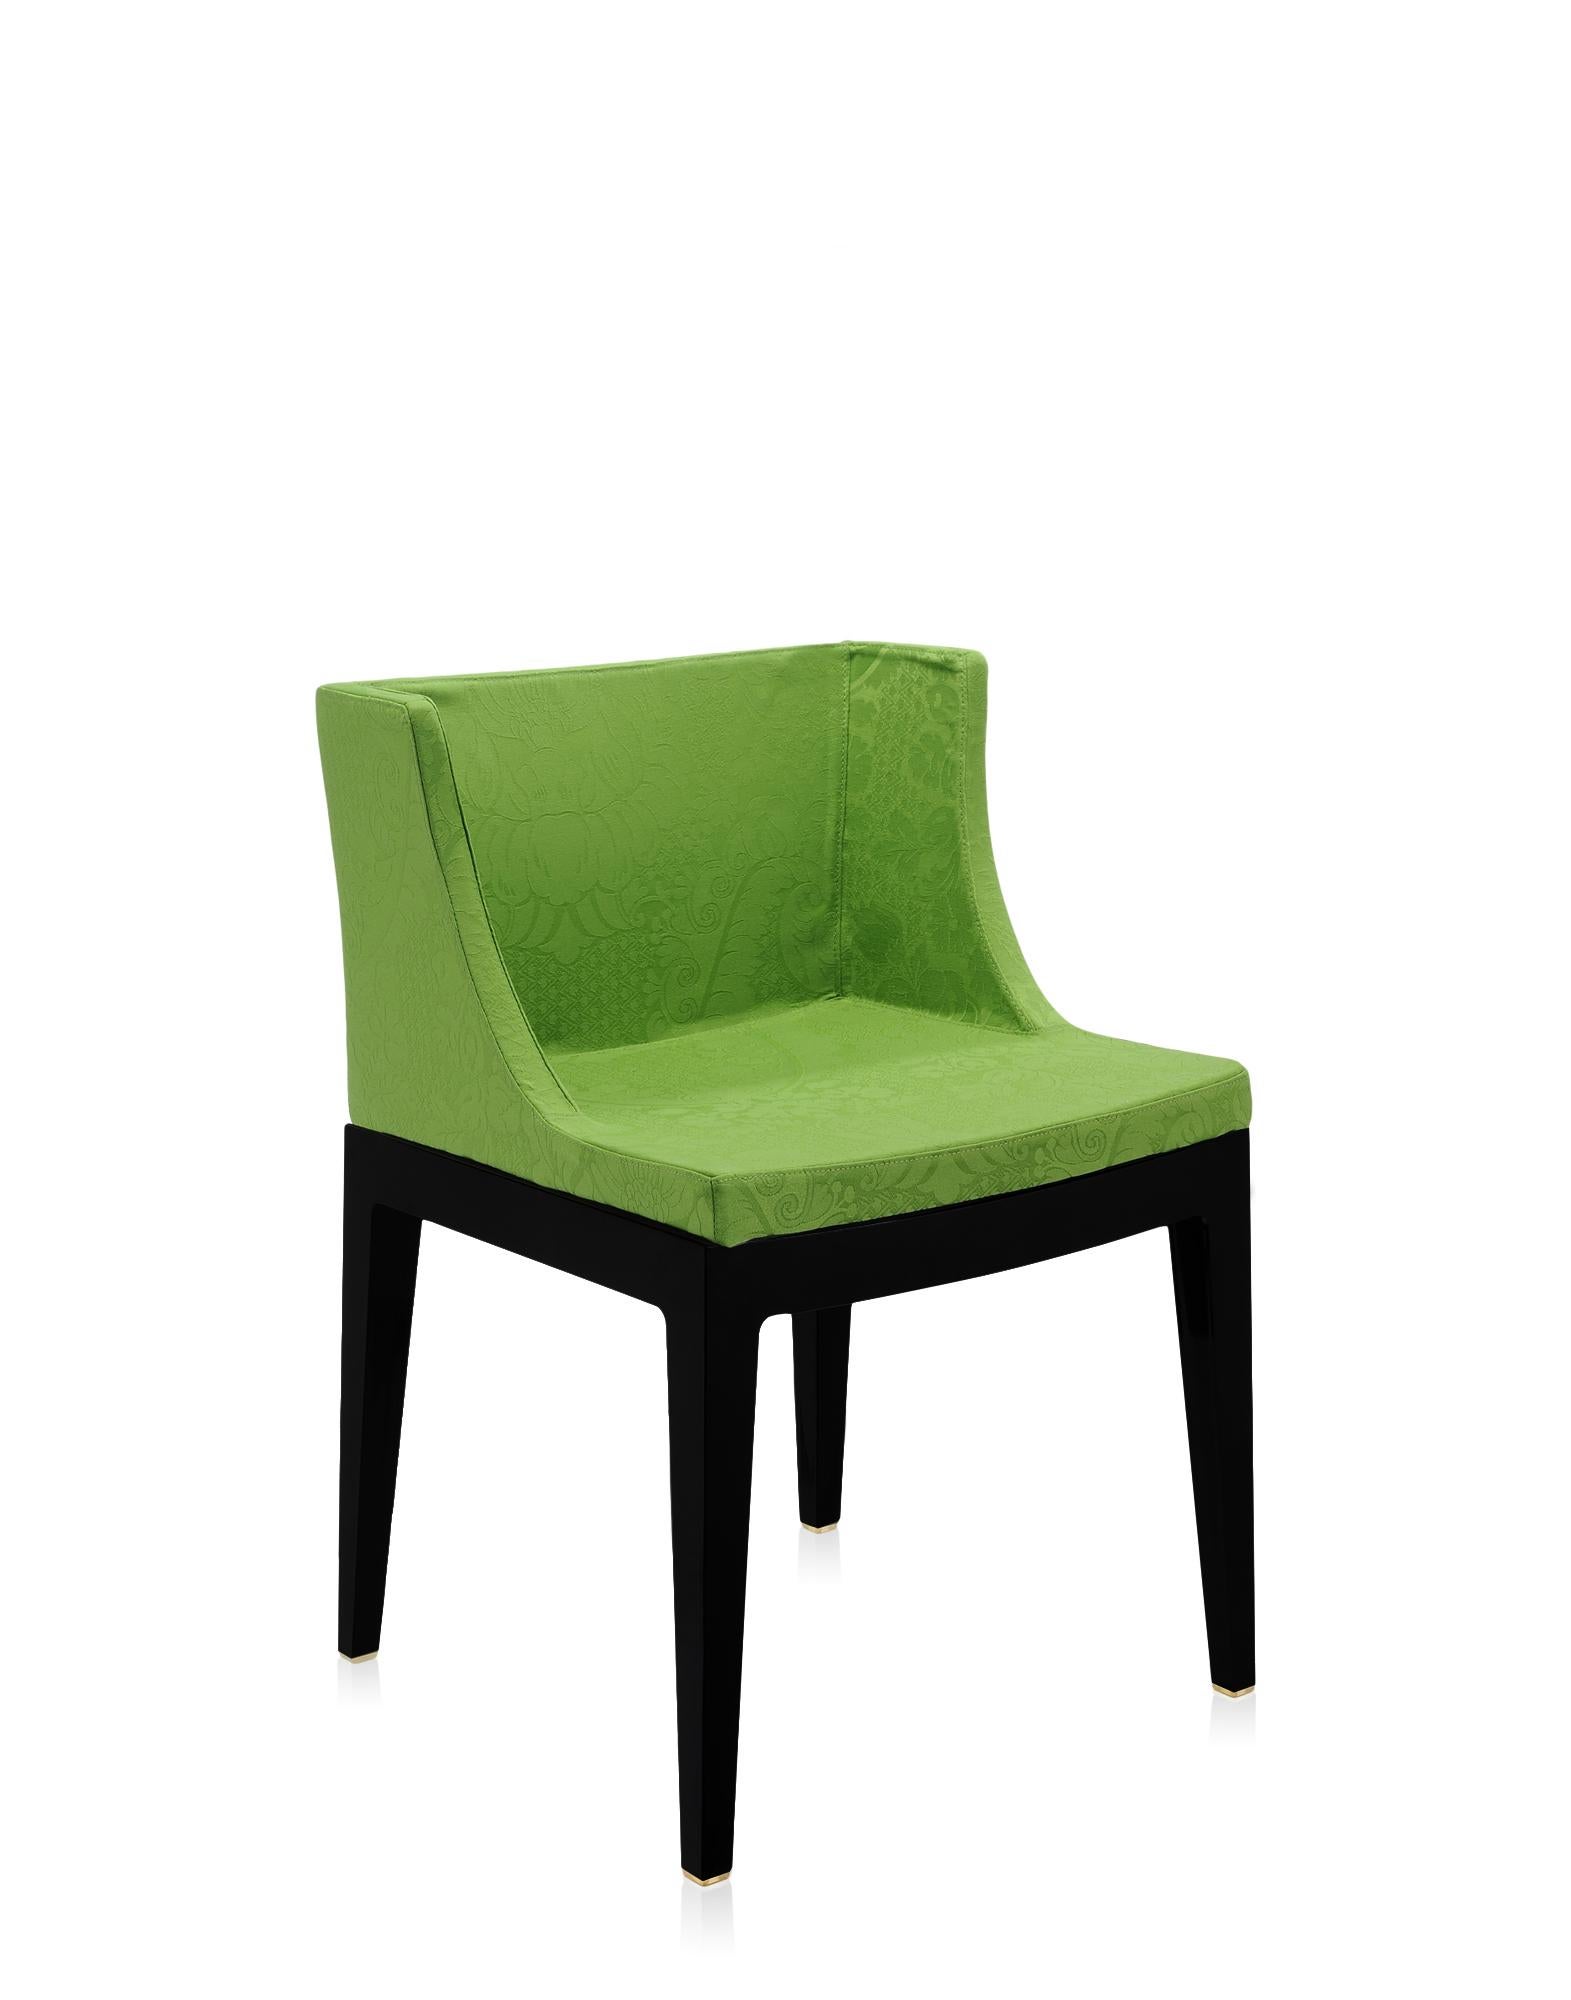 Le fauteuil Mademoiselle est habillé de la large gamme de tissus Memphis, conçus par Ettore Sottsass et Nathalie du Pasquier.
Il est proposé avec un cadre transparent ou noir.
 